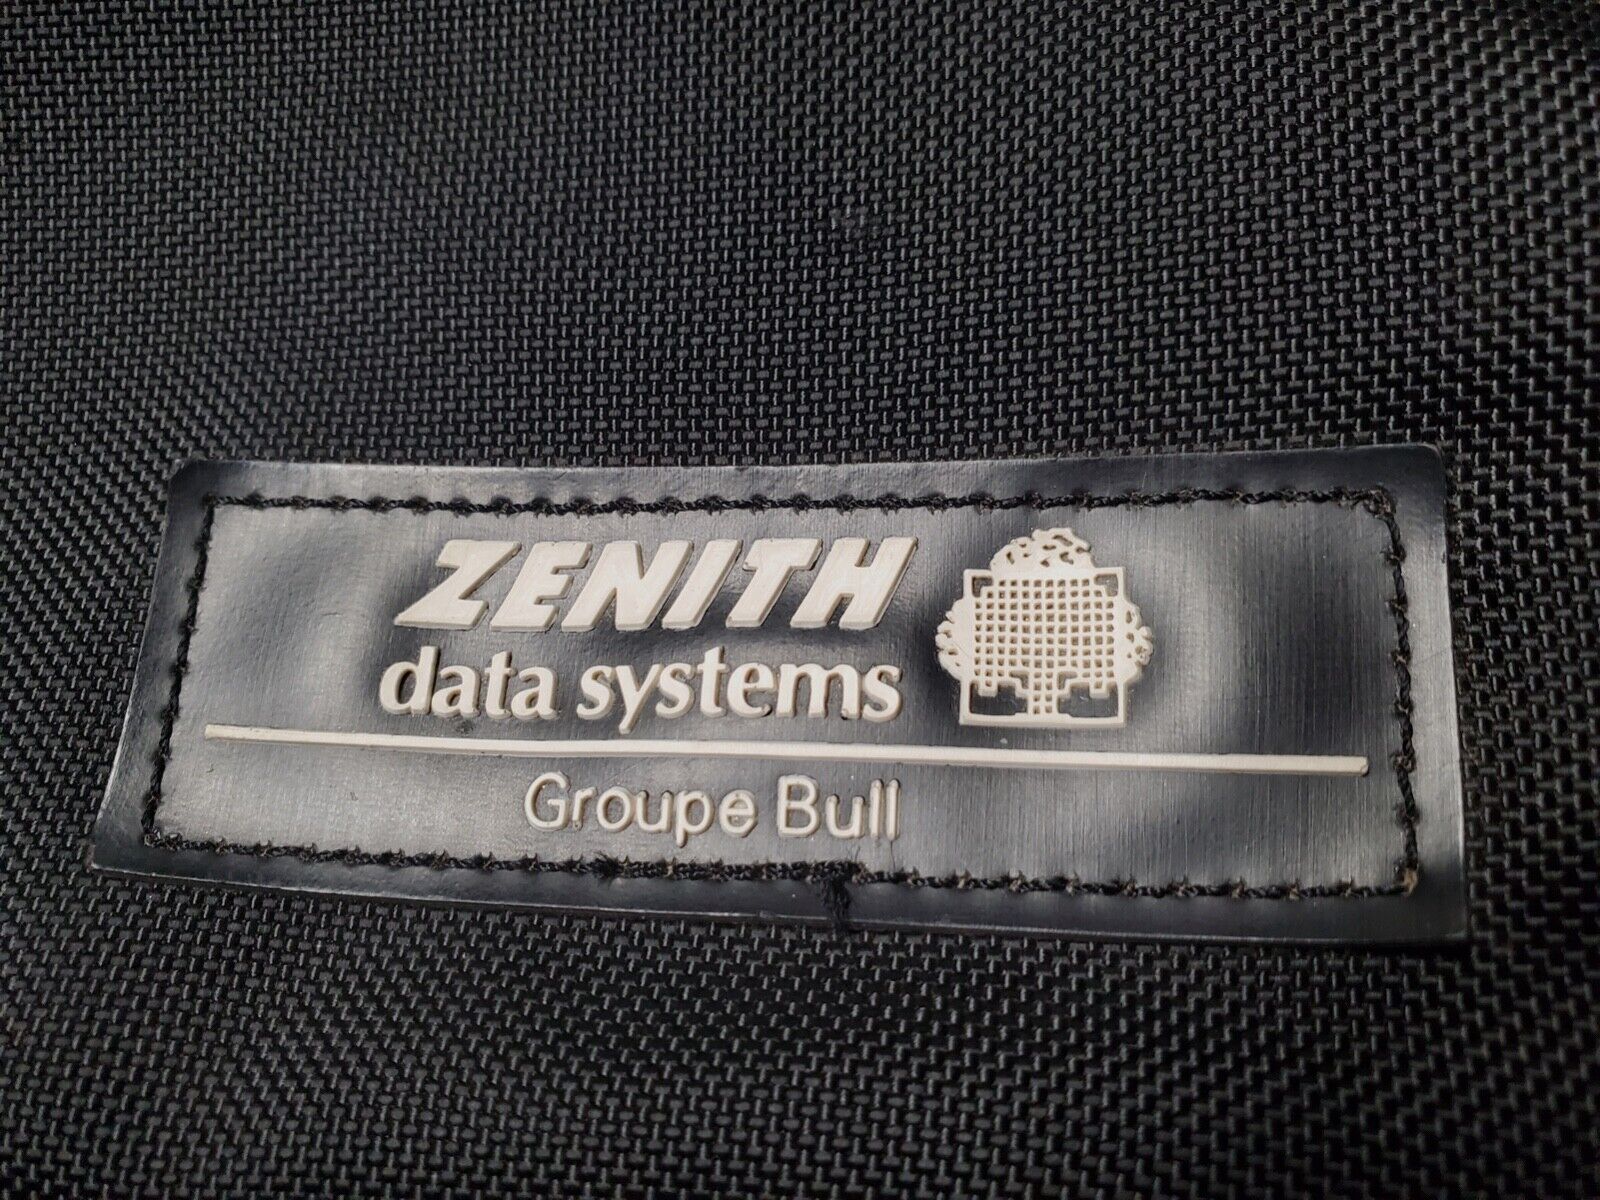 RARE Vintage Zenith Data Systems Laptop BAG Case RARE GROUPE BULL LOGO No Strap